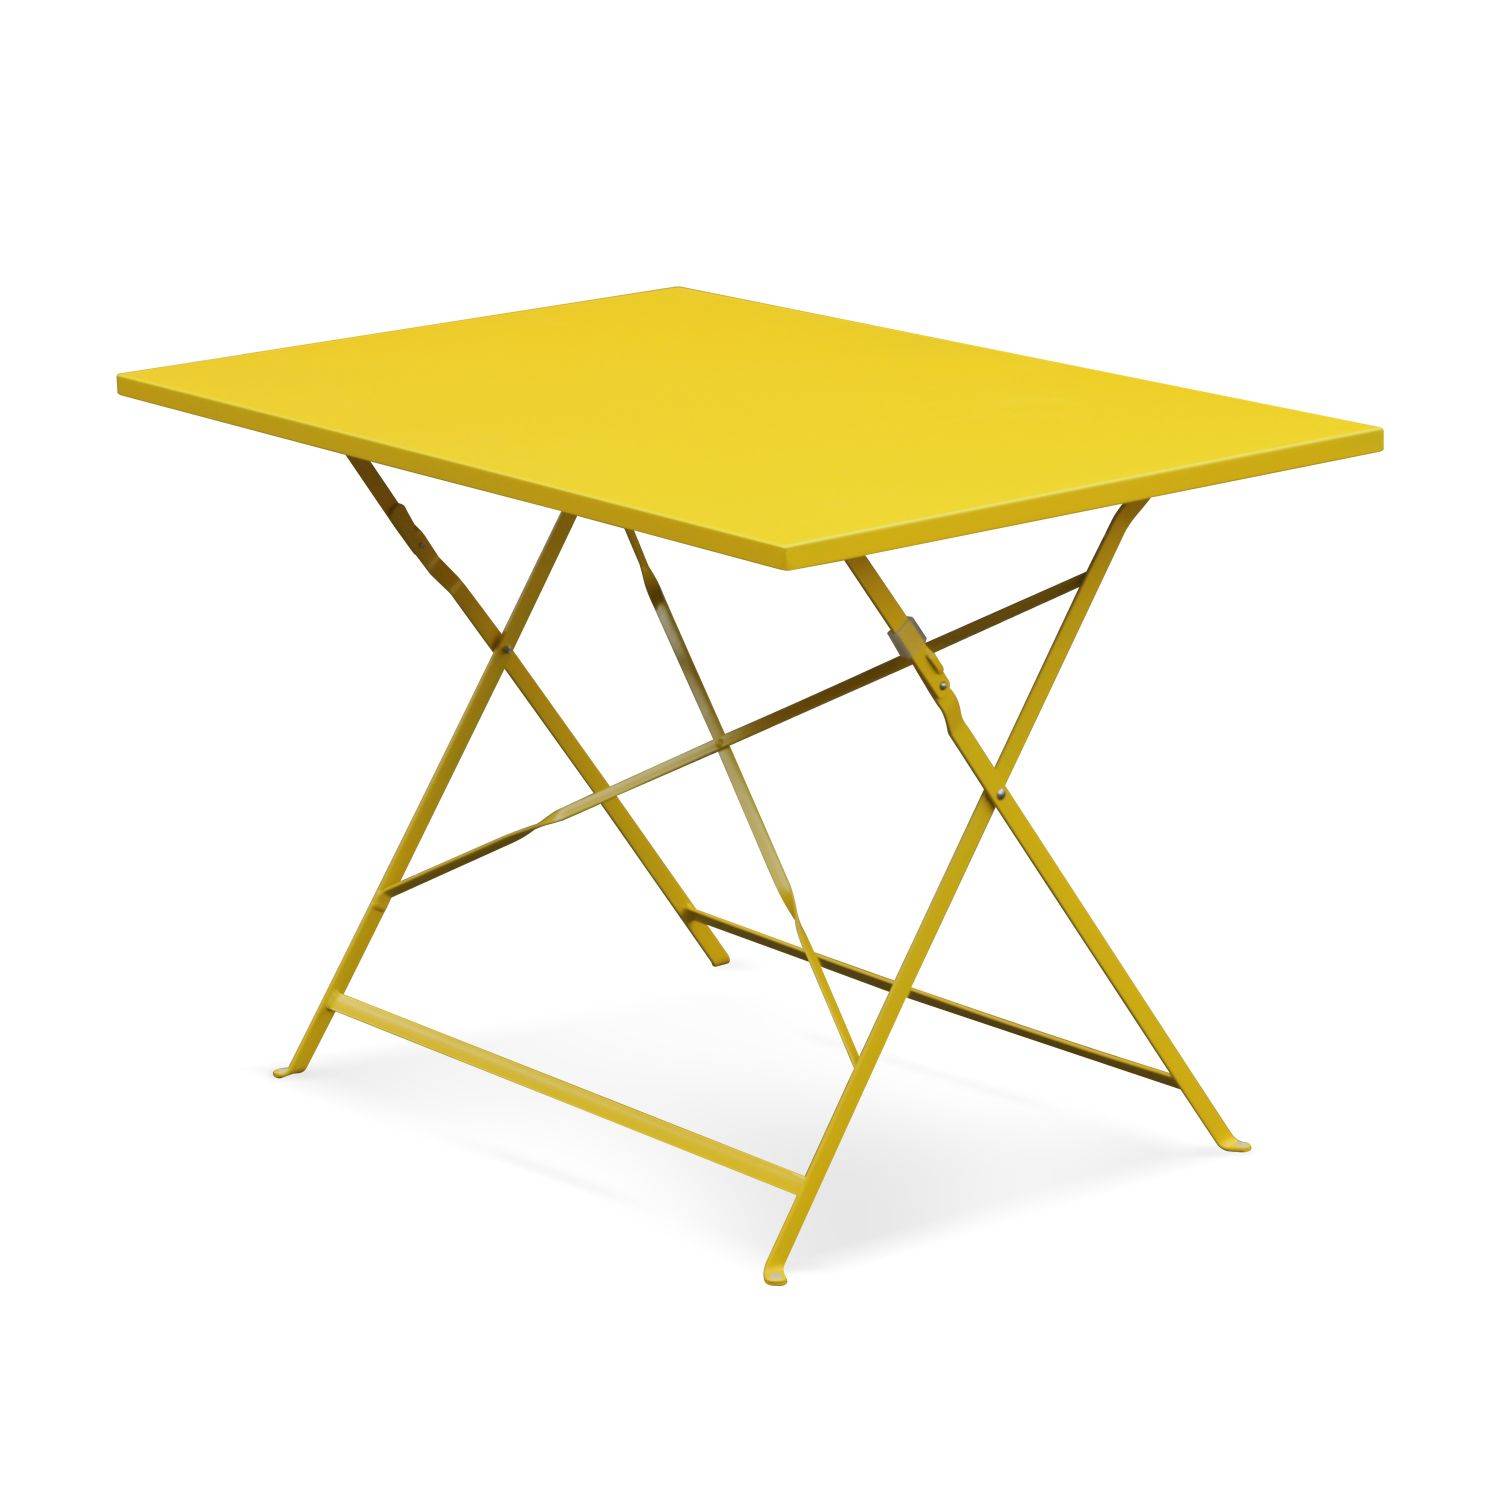 Emilia - Bistro tuintafel opvouwbaar - Rechthoekige tafel 110x70cm van staal met thermolak - Geel Photo1